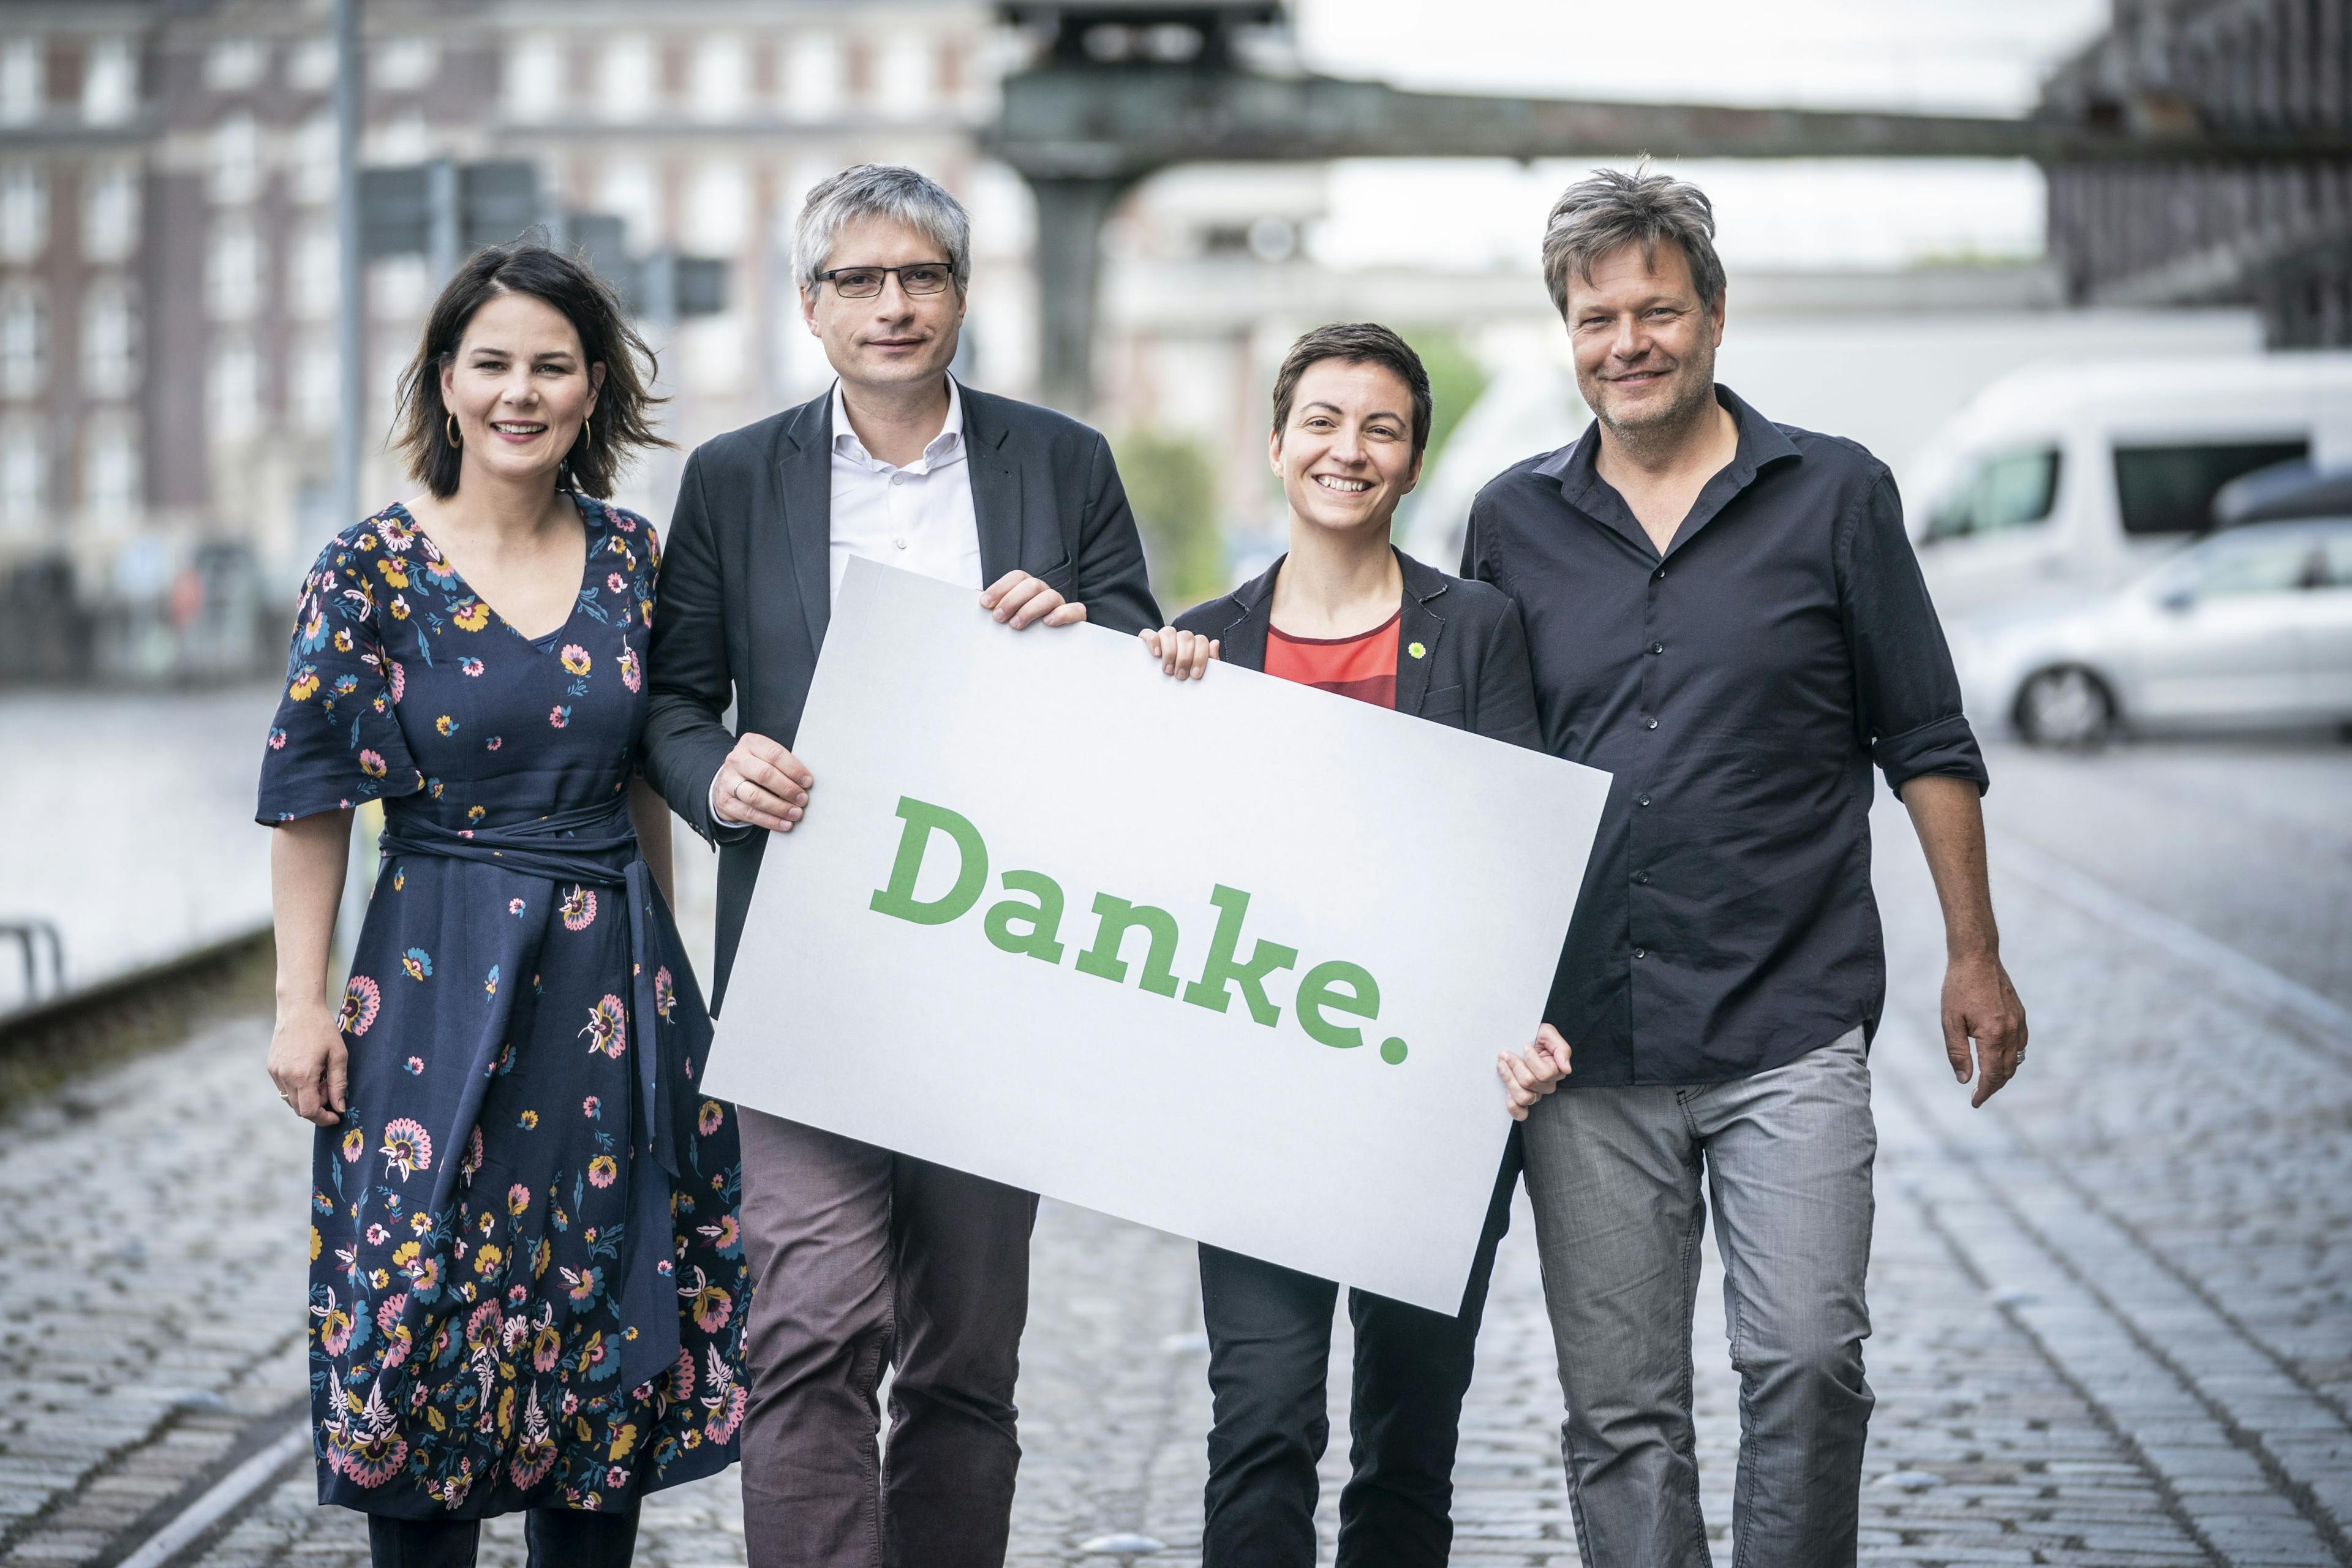 Annalena Baerbock, Sven Giegold, Ska Keller und Robert Habeck stehen nebeneinander und halten ein Schild mit der Aufschrift "Danke" in der Hand. Im Hintergrund ist eine Hafenpromenade zu sehen.